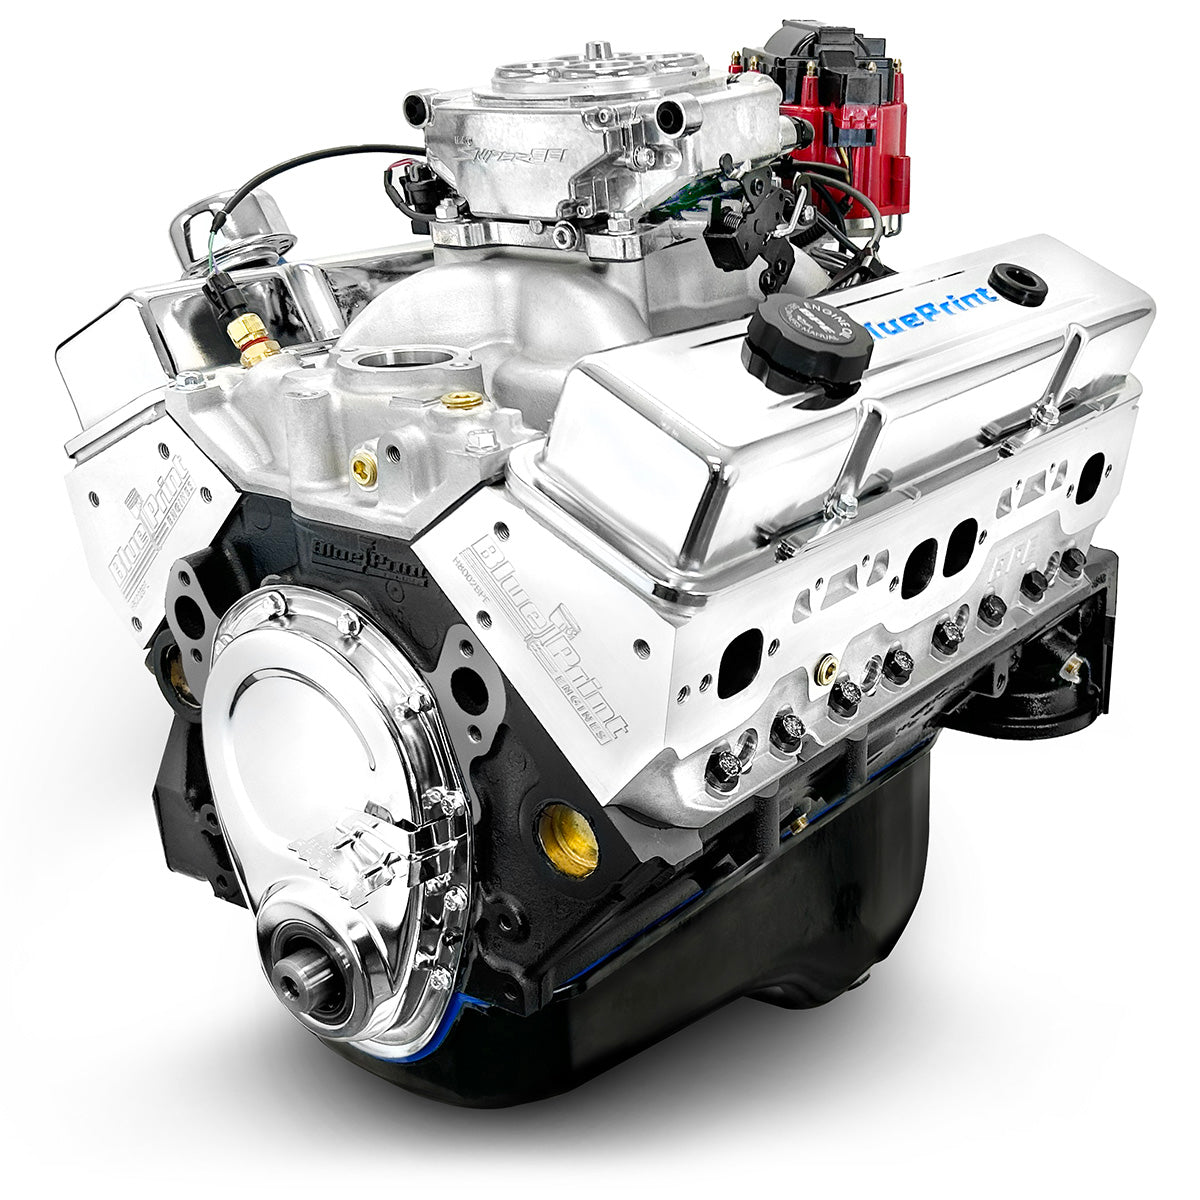 GM SB Compatible 383 c.i. Engine - 436 HP - Base Dressed - Fuel